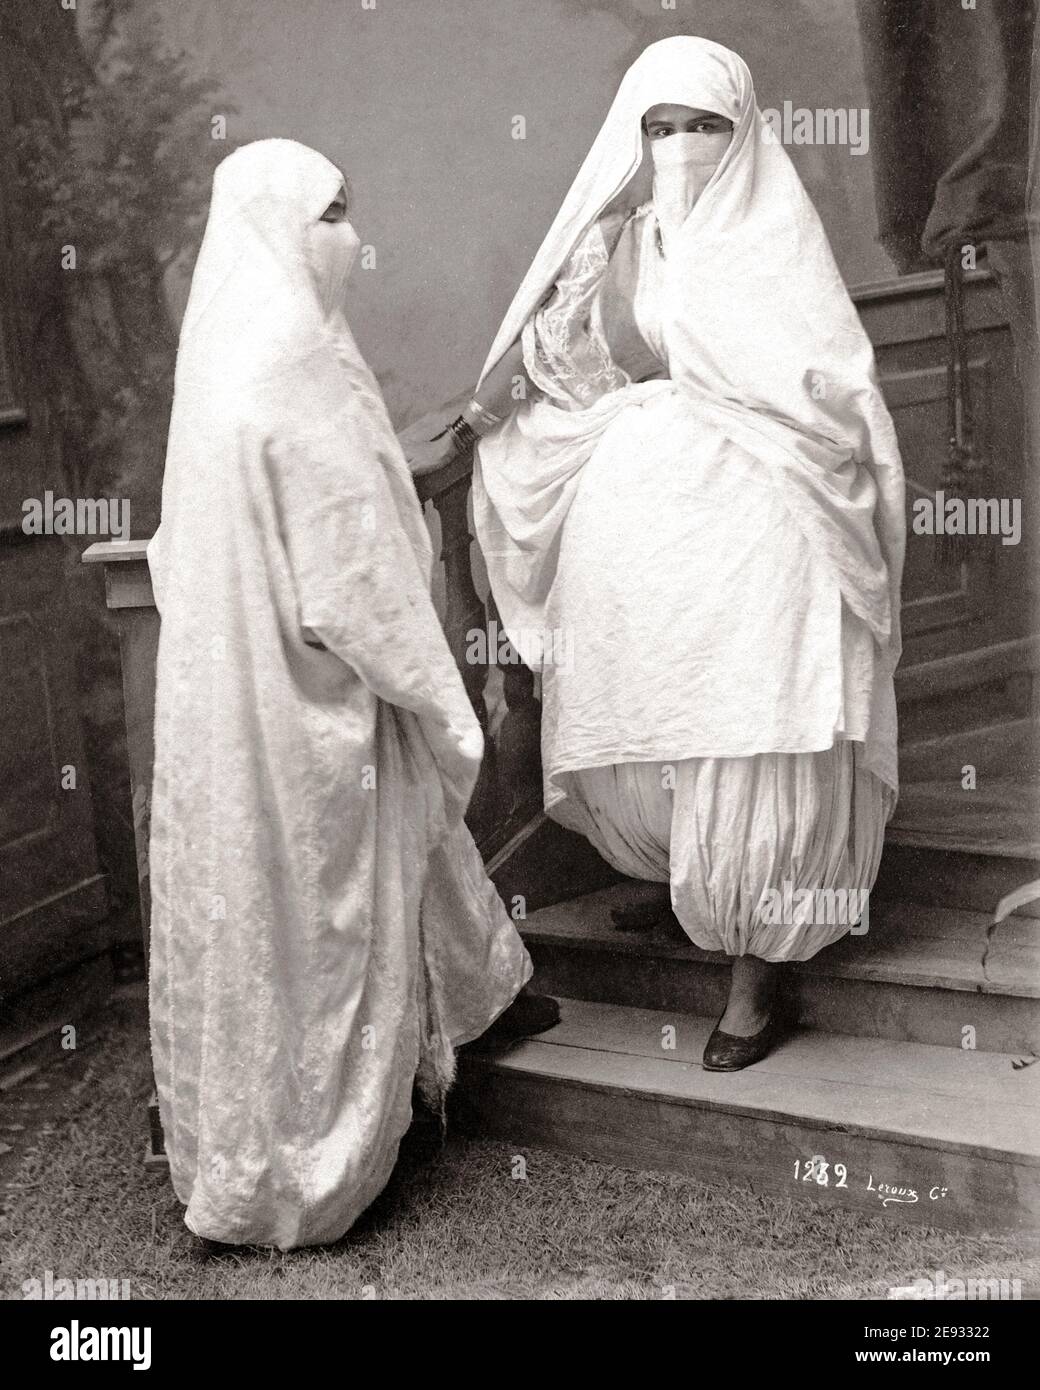 Photographie de la fin du XIXe siècle - femmes voilées, Algérie Photo Stock  - Alamy